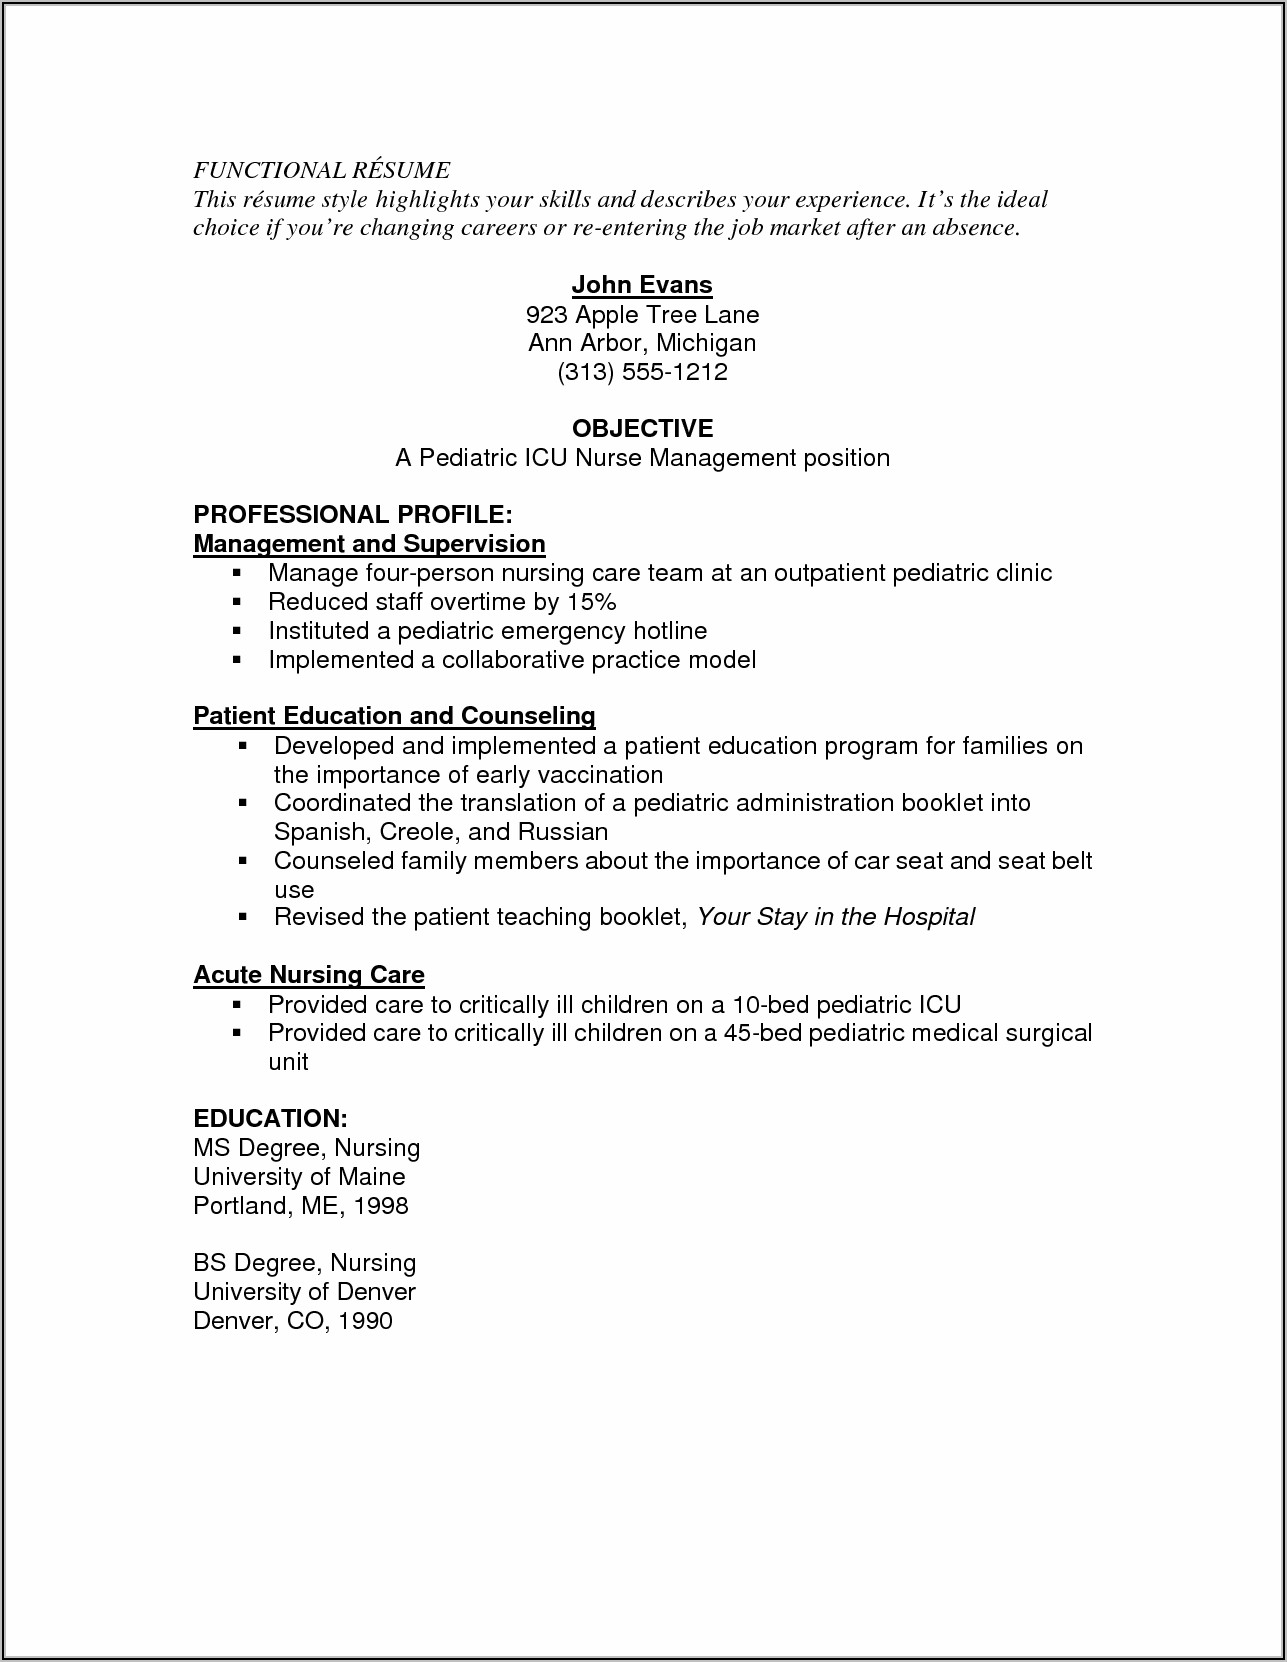 Resume Sample For Registered Nurse Position